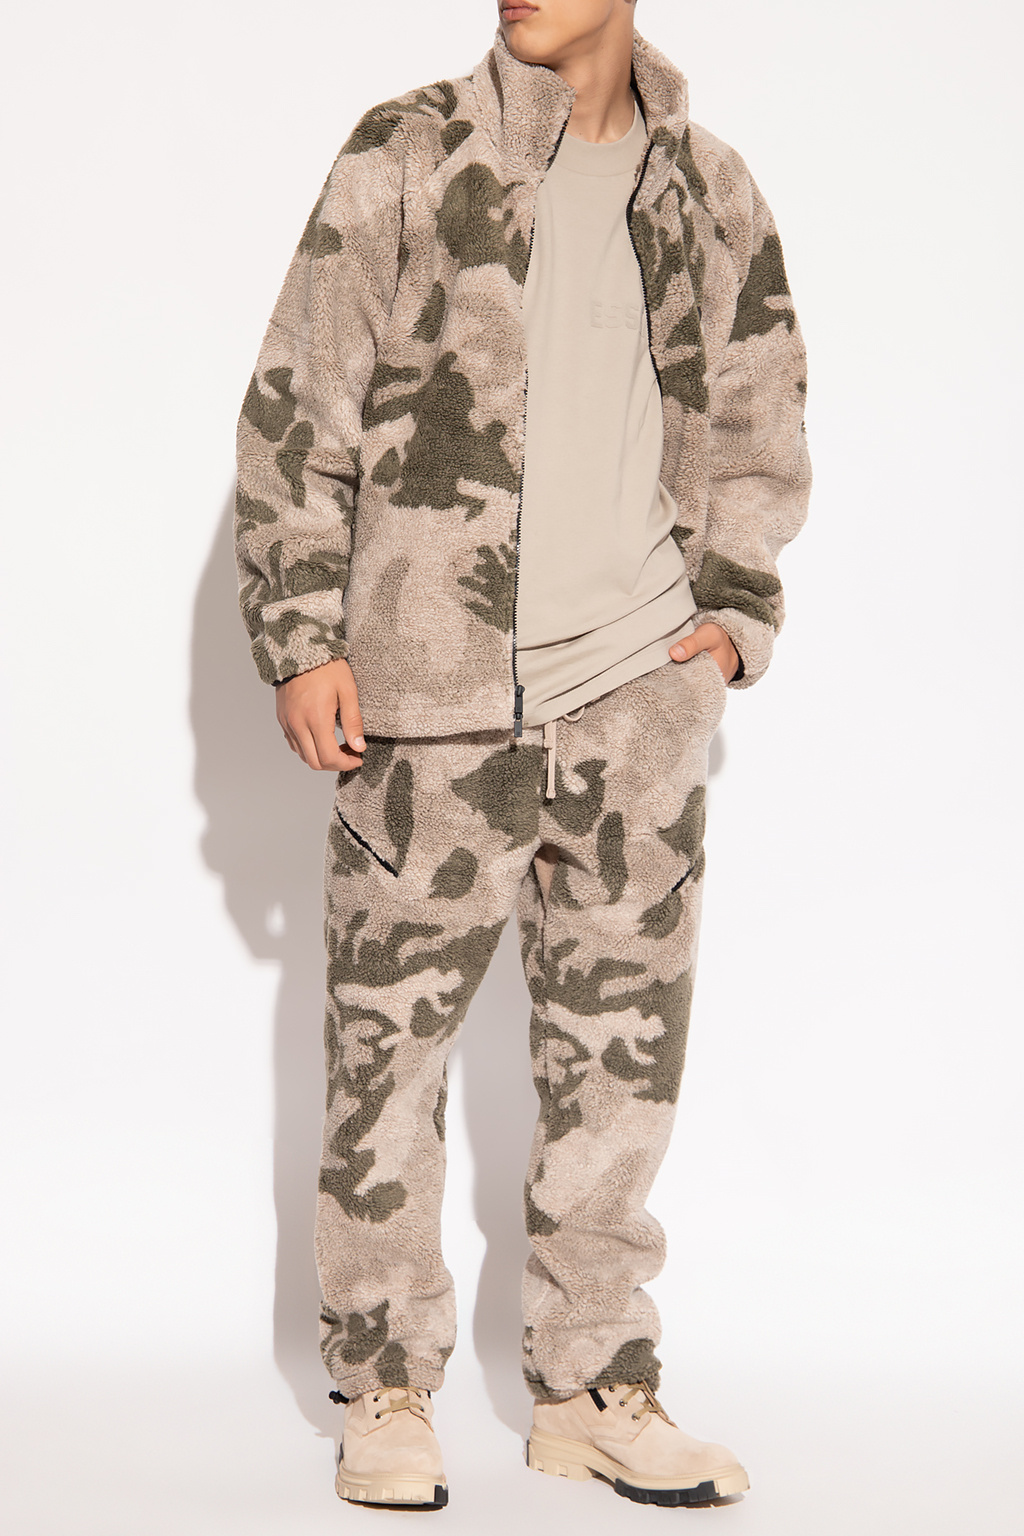 Fear Of God Essentials Fleece hoodie with camo pattern | Men's